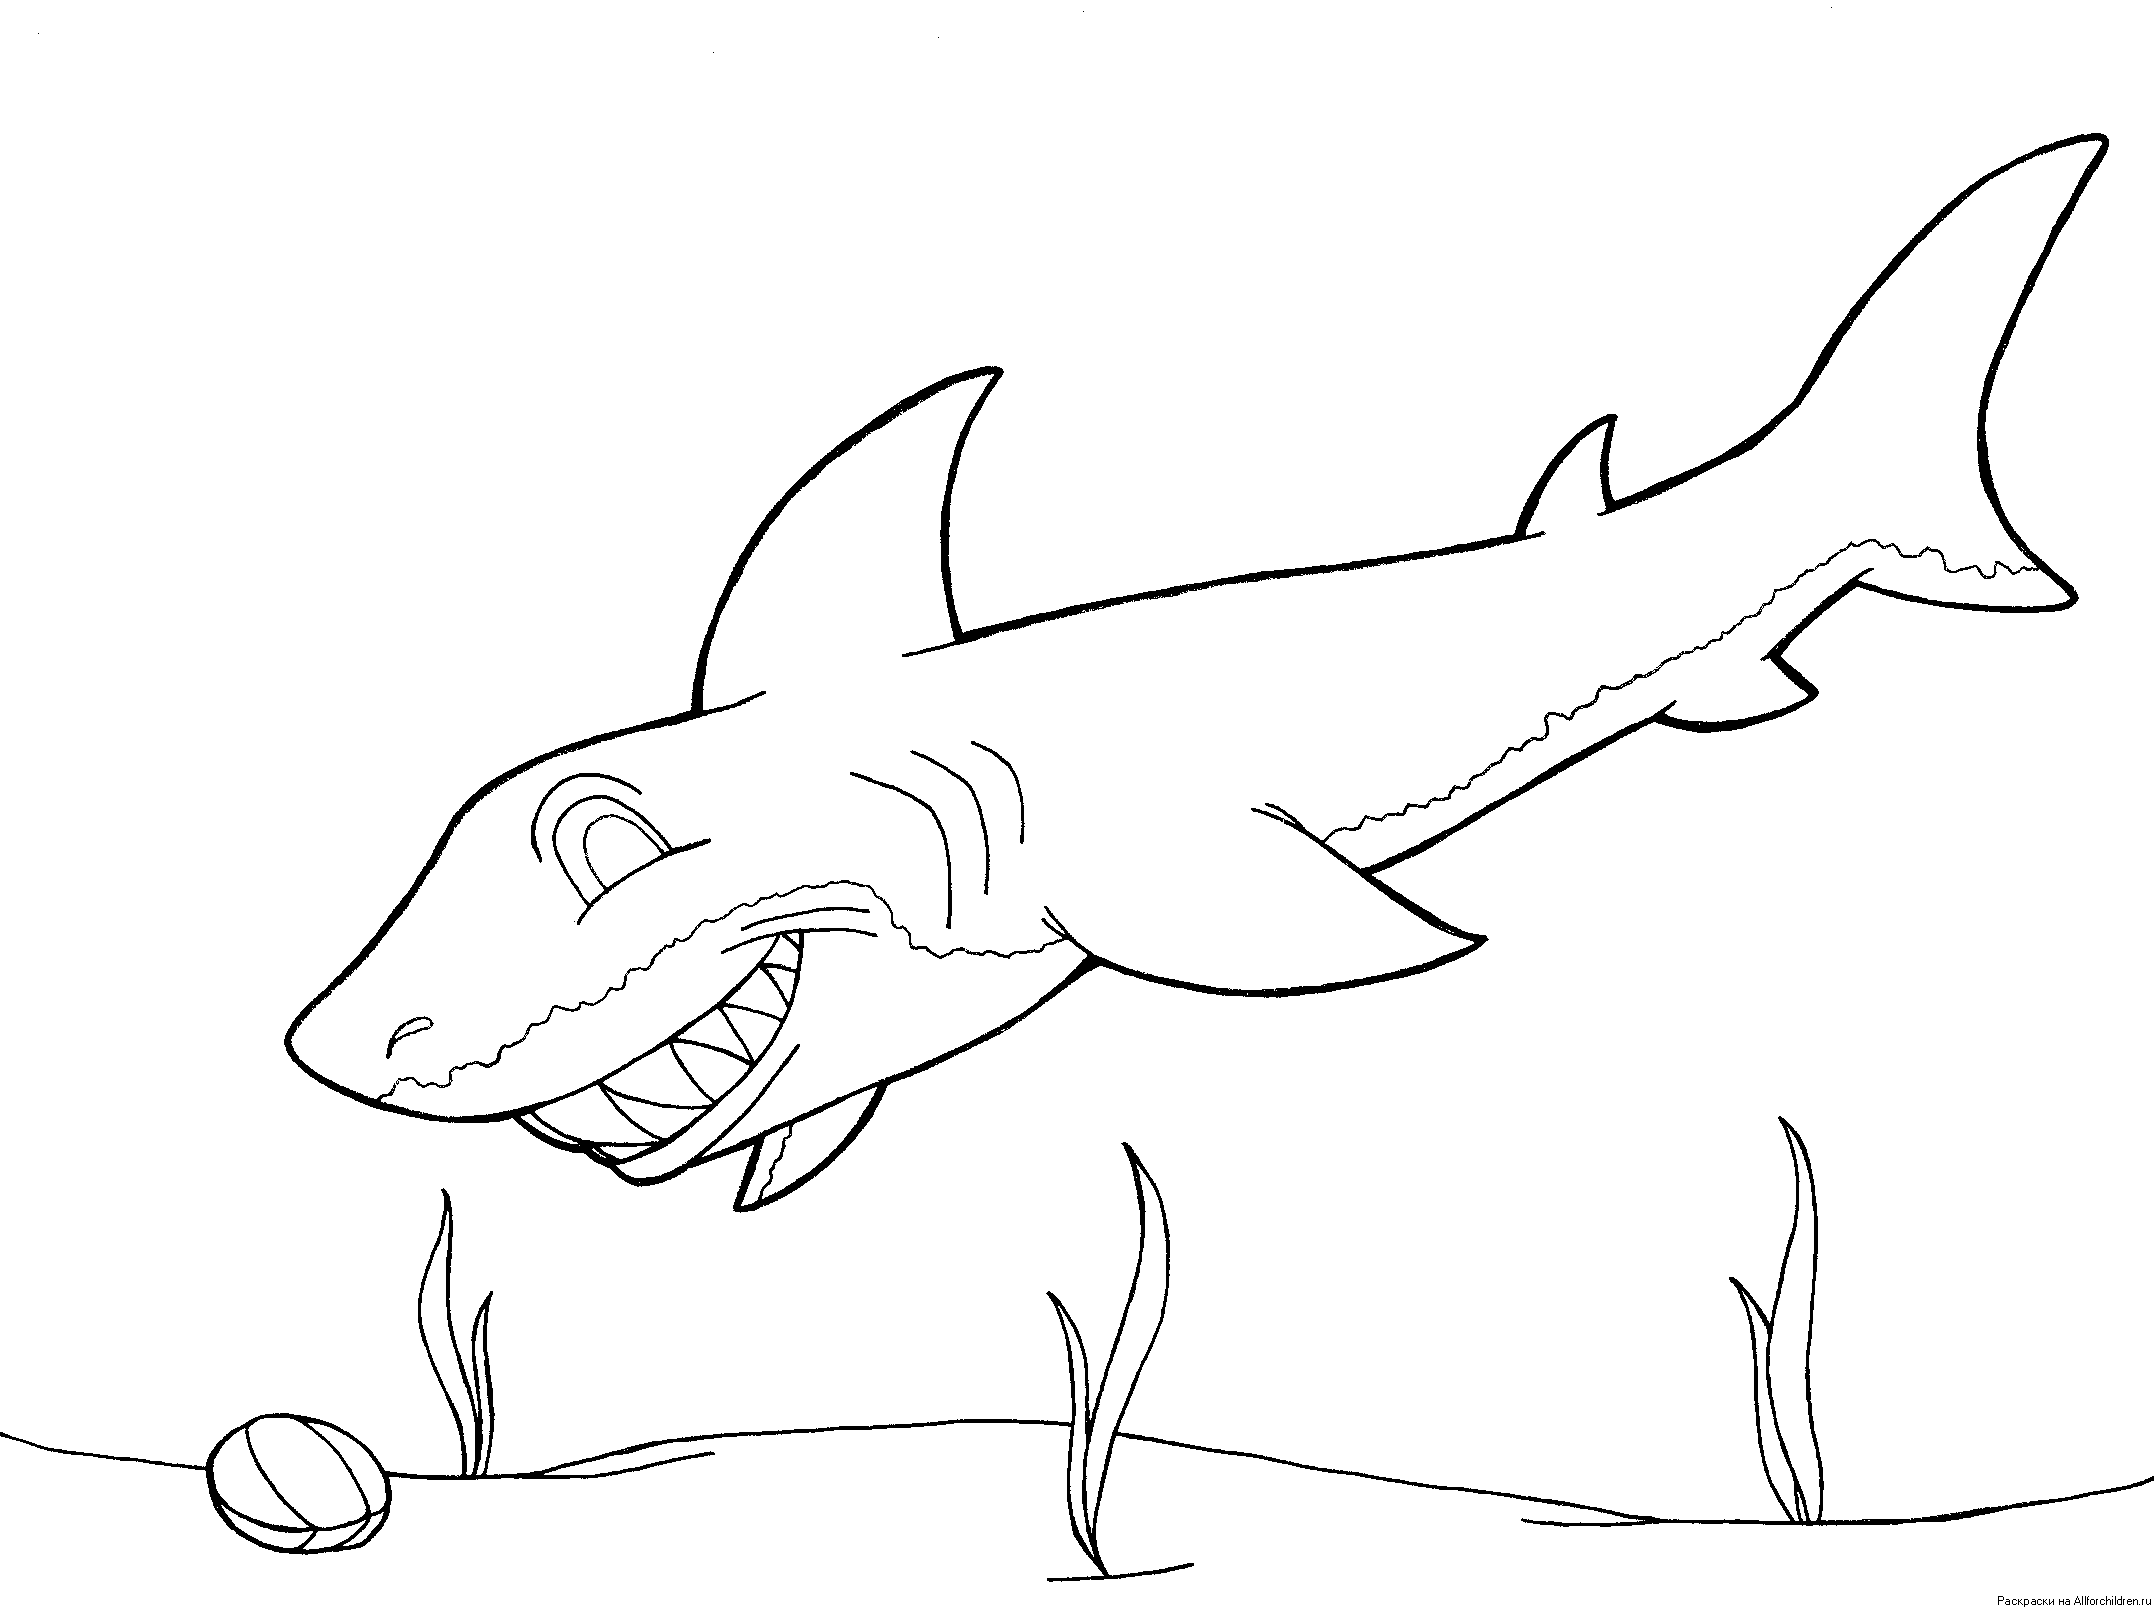 Играть в раскраску Пинкфонг и акула онлайн